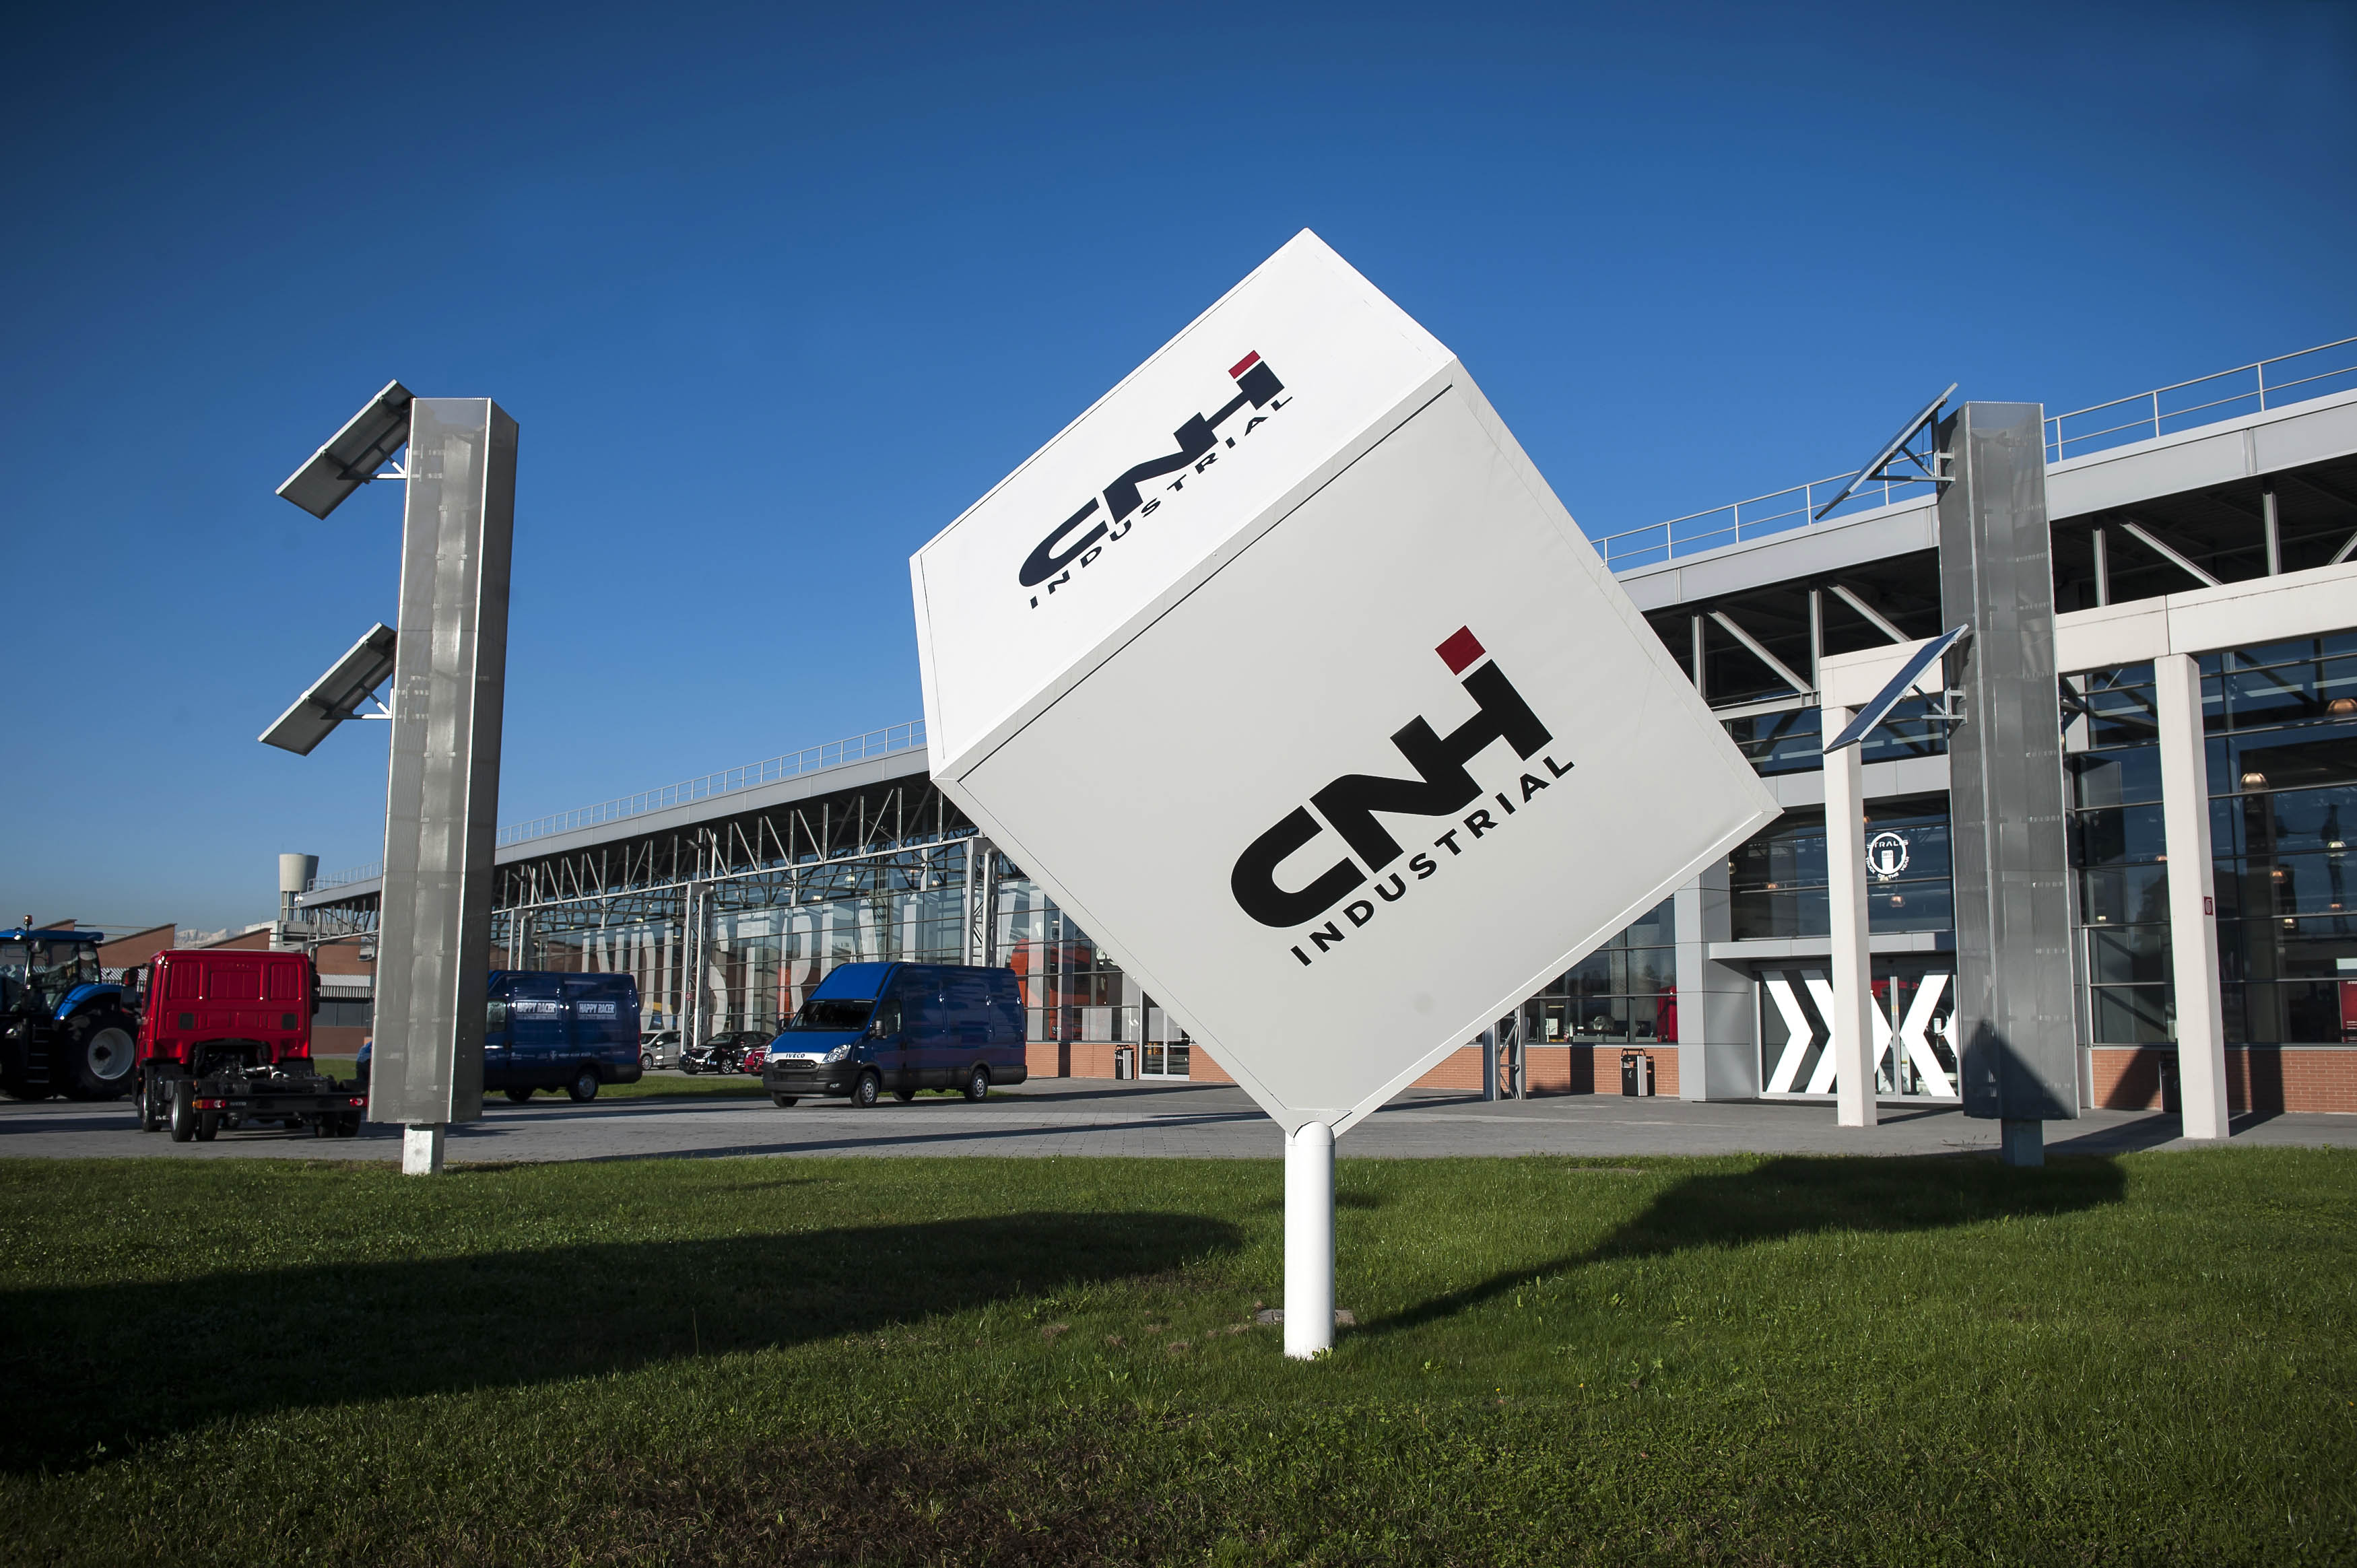  CNH Industrial presenta i propri punti di forza globali a Expo Milano 2015